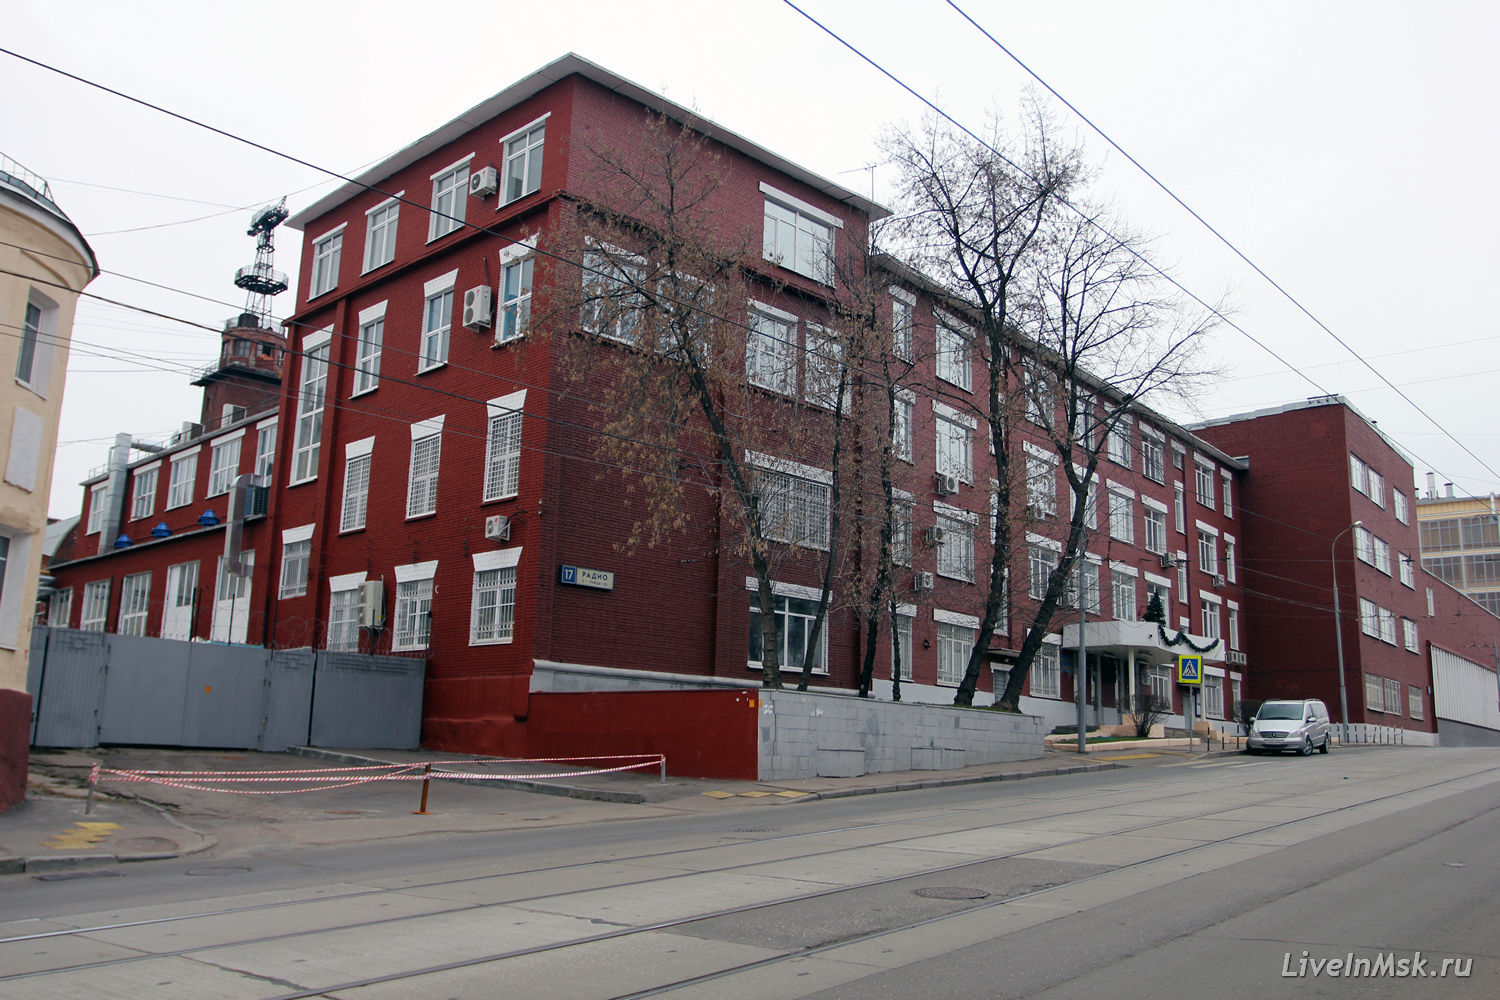 Здание филиала ЦАГИ на улице Радио, фото 2015 года